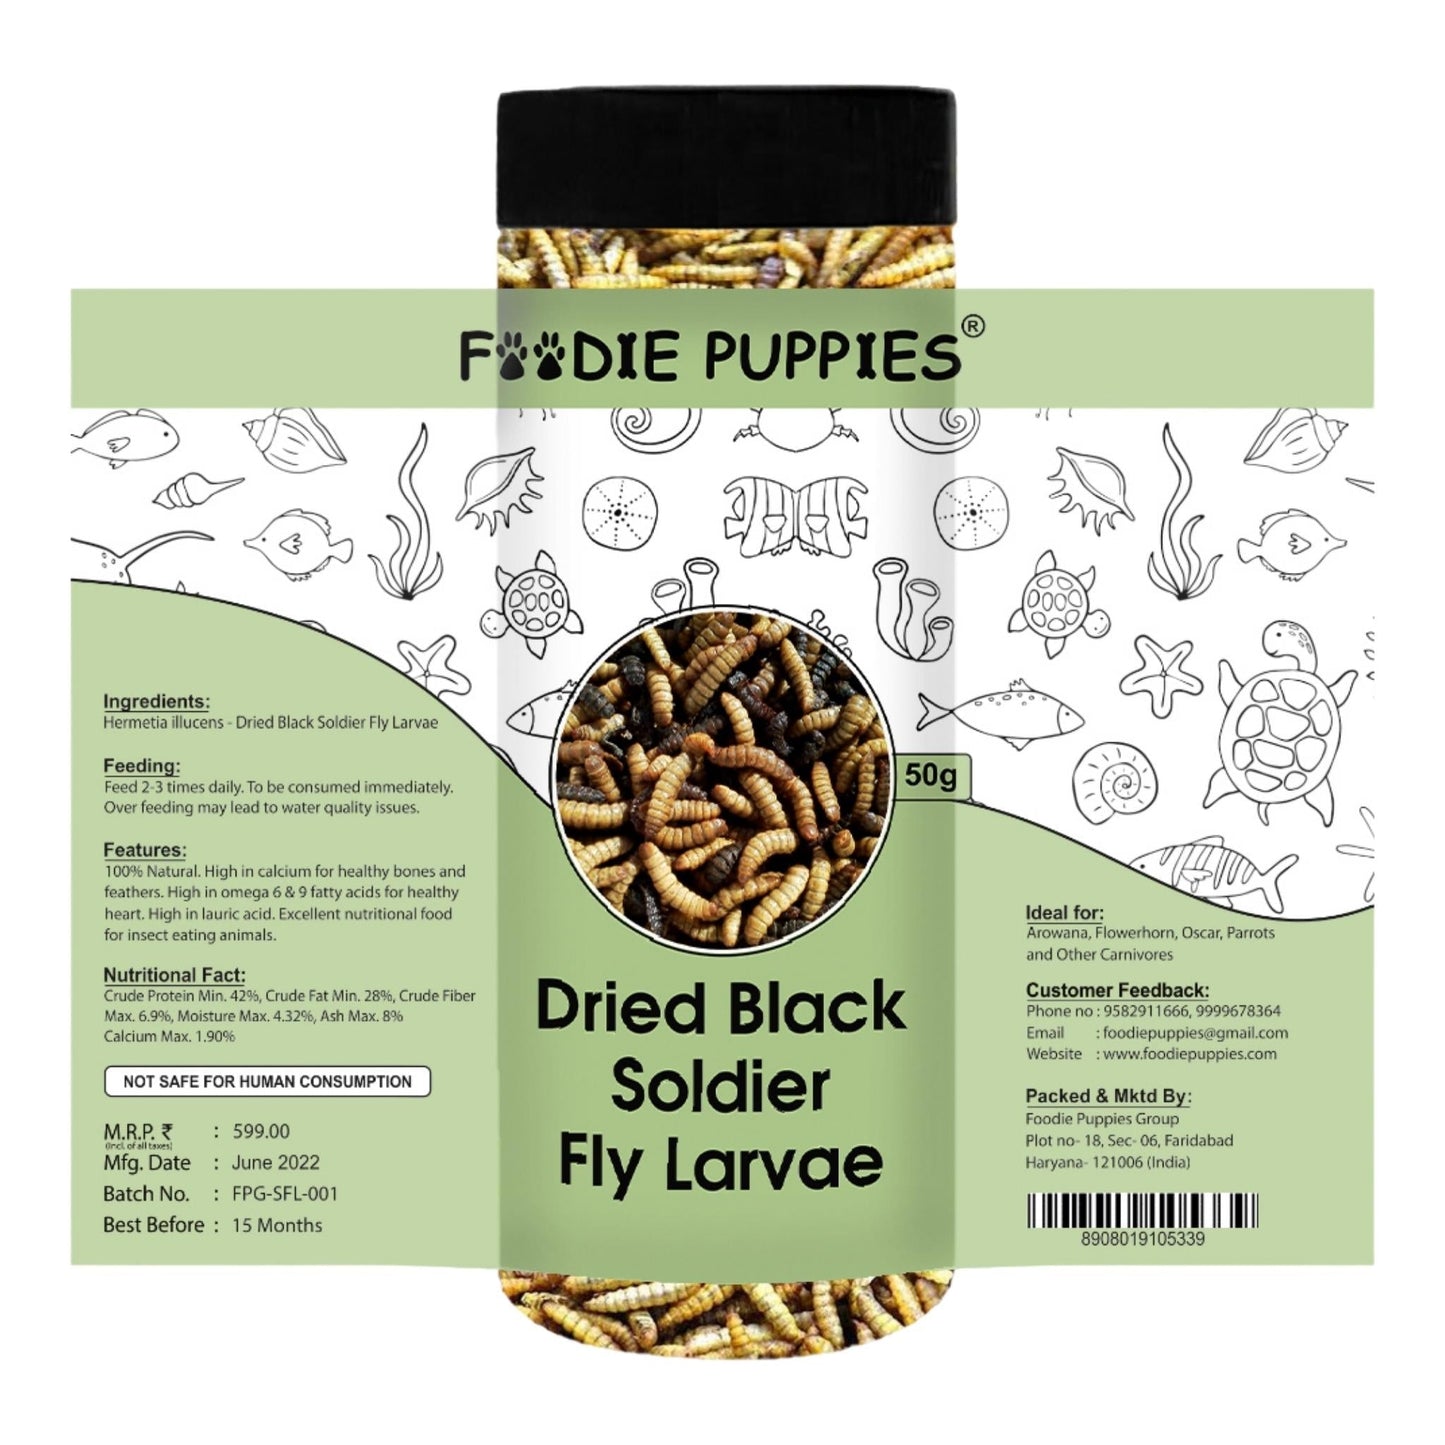 Foodie Puppies Dried Black Soldier Larvae Fish Food - 50gm, Pack of 3